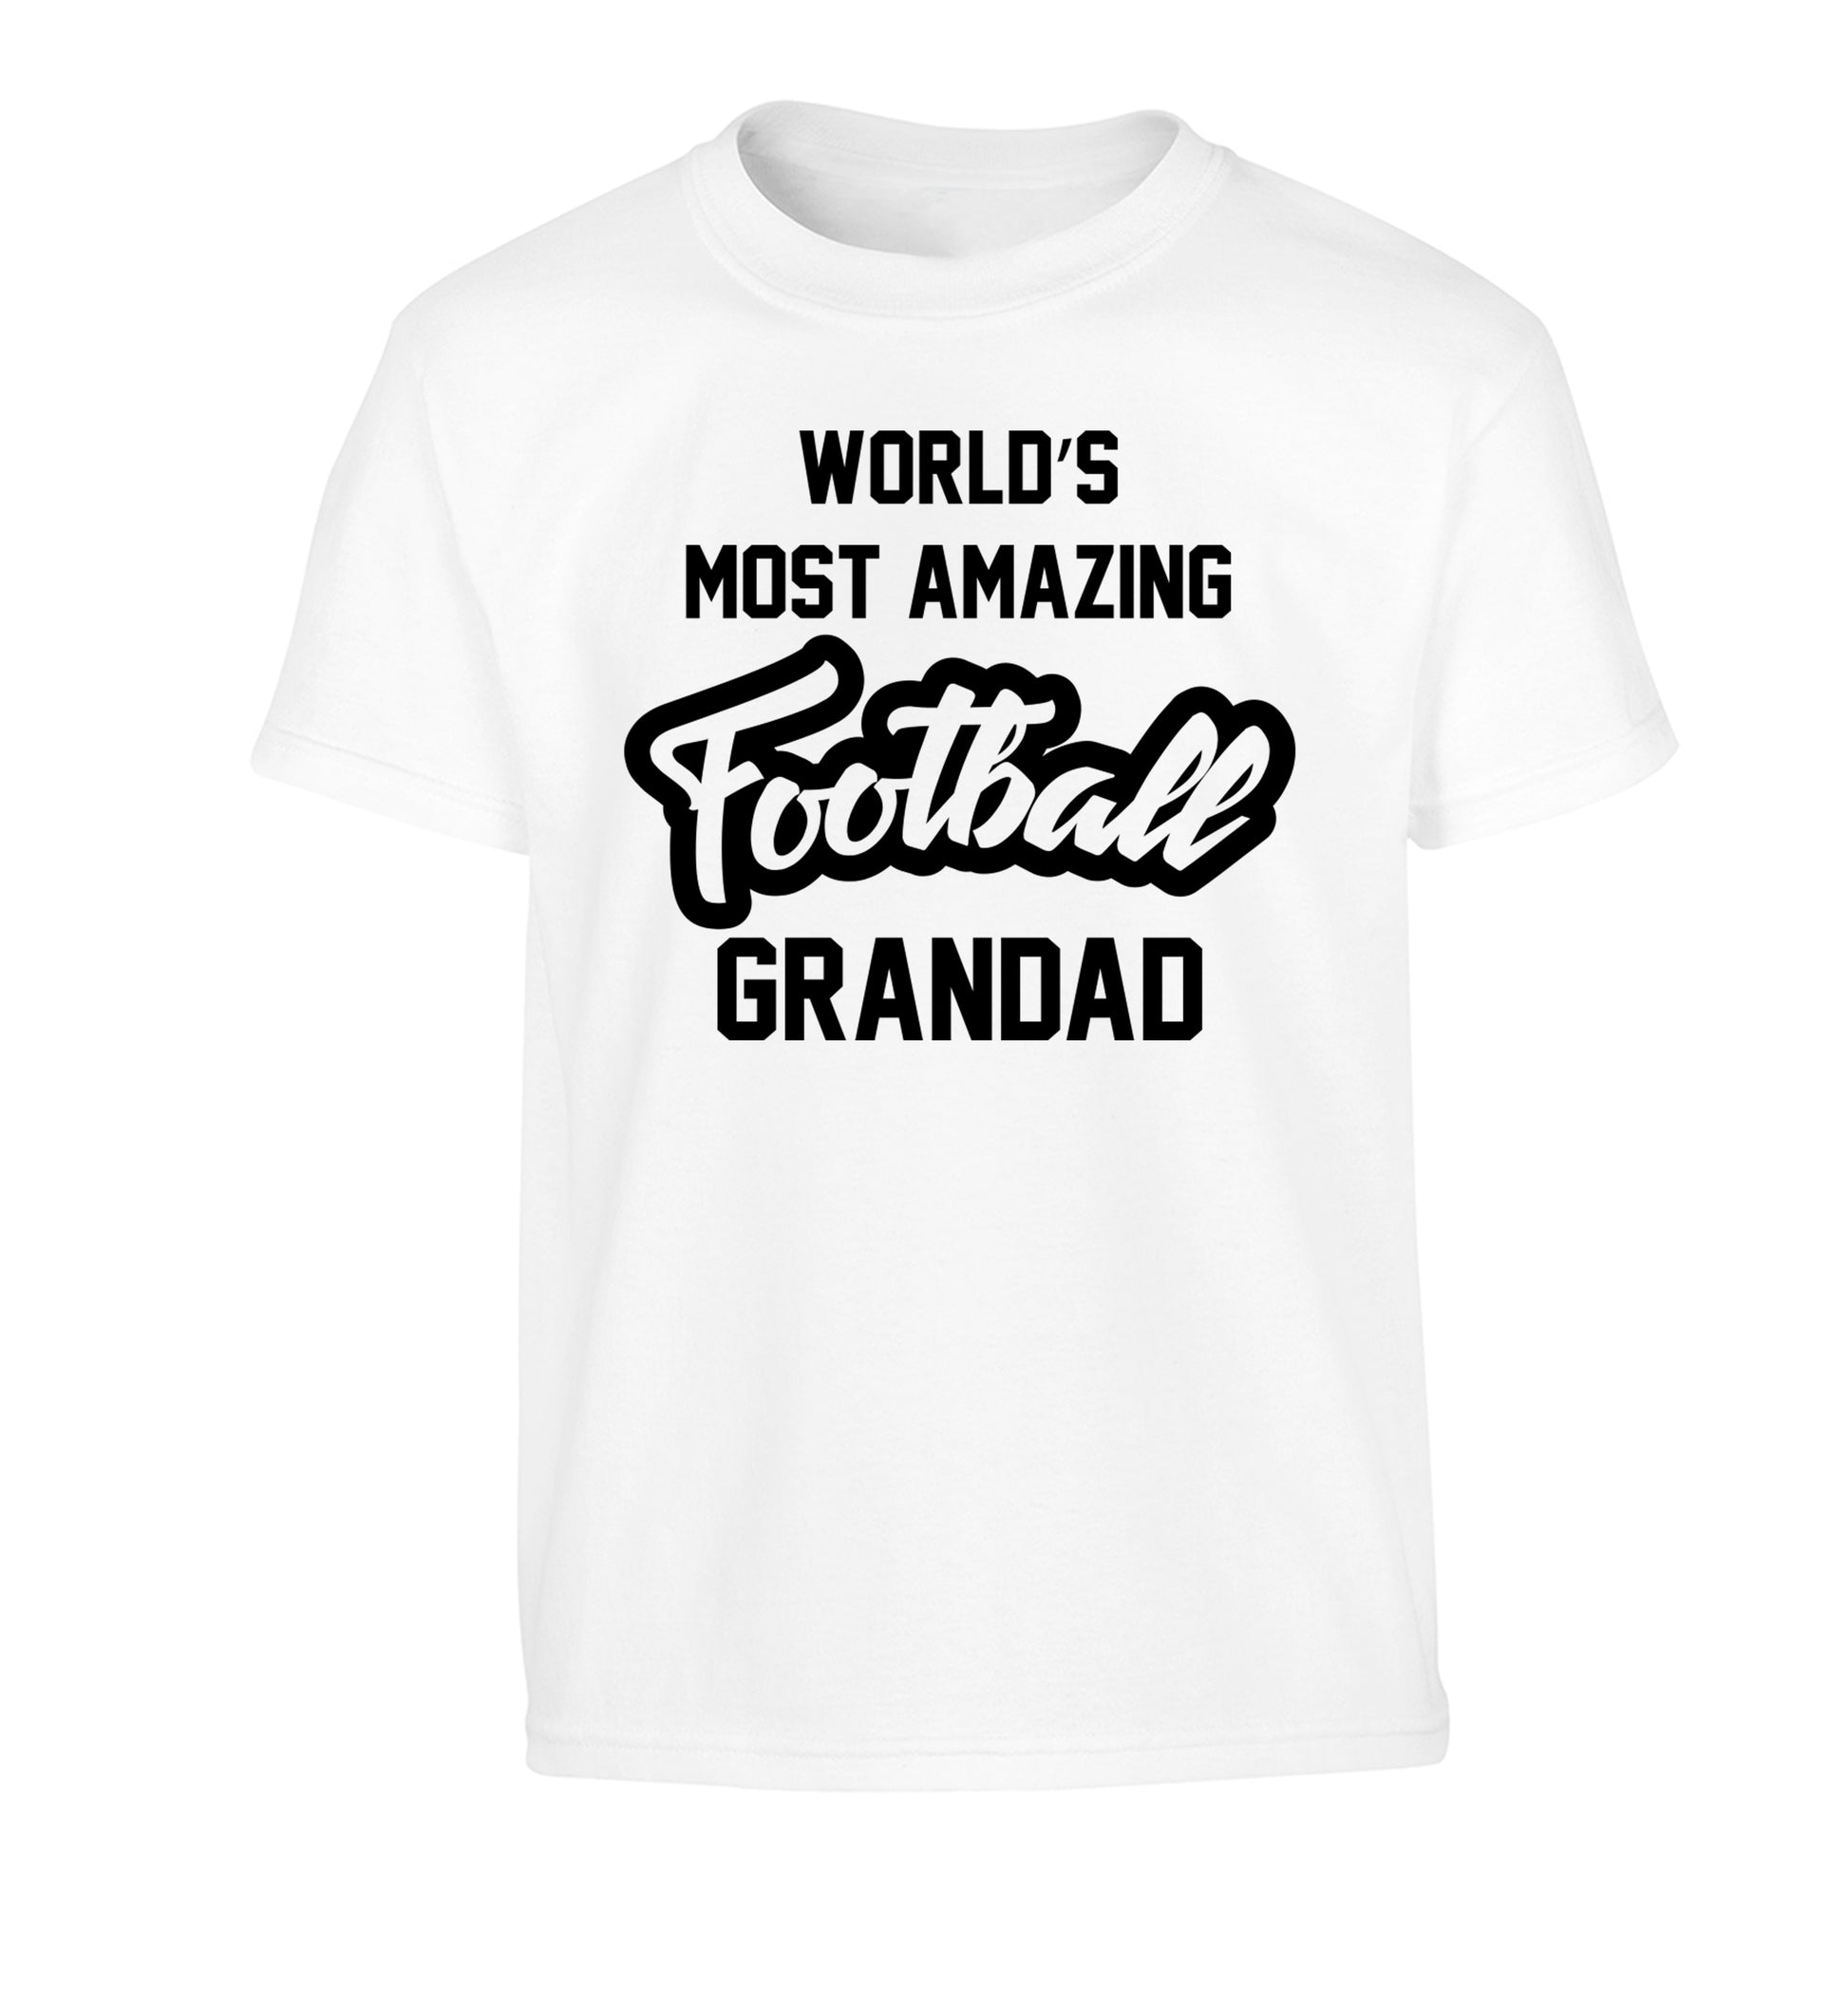 Worlds most amazing football grandad Children's white Tshirt 12-14 Years